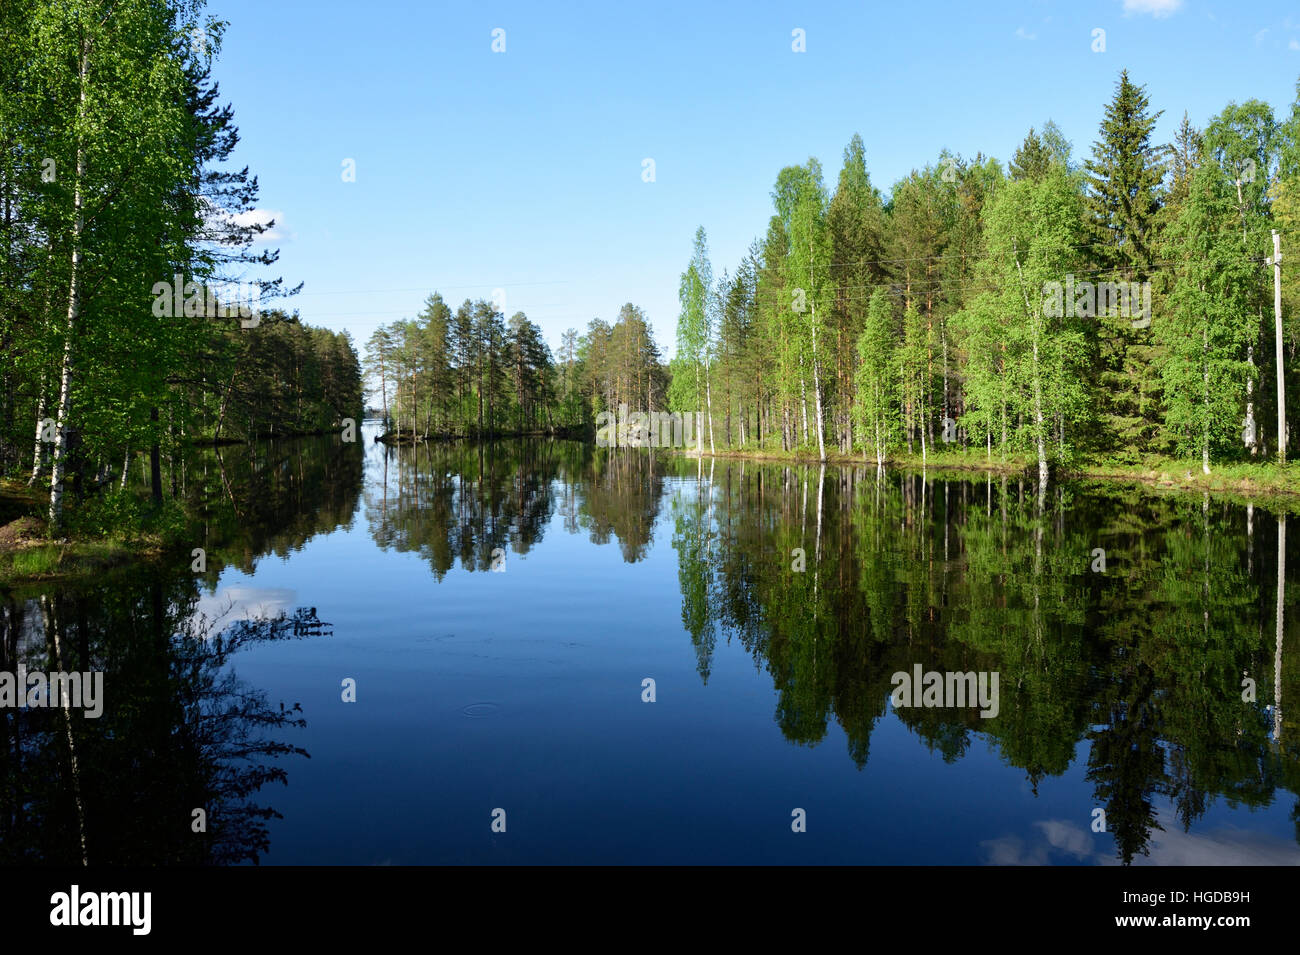 River lake, forest in Nurmijoki Stock Photo